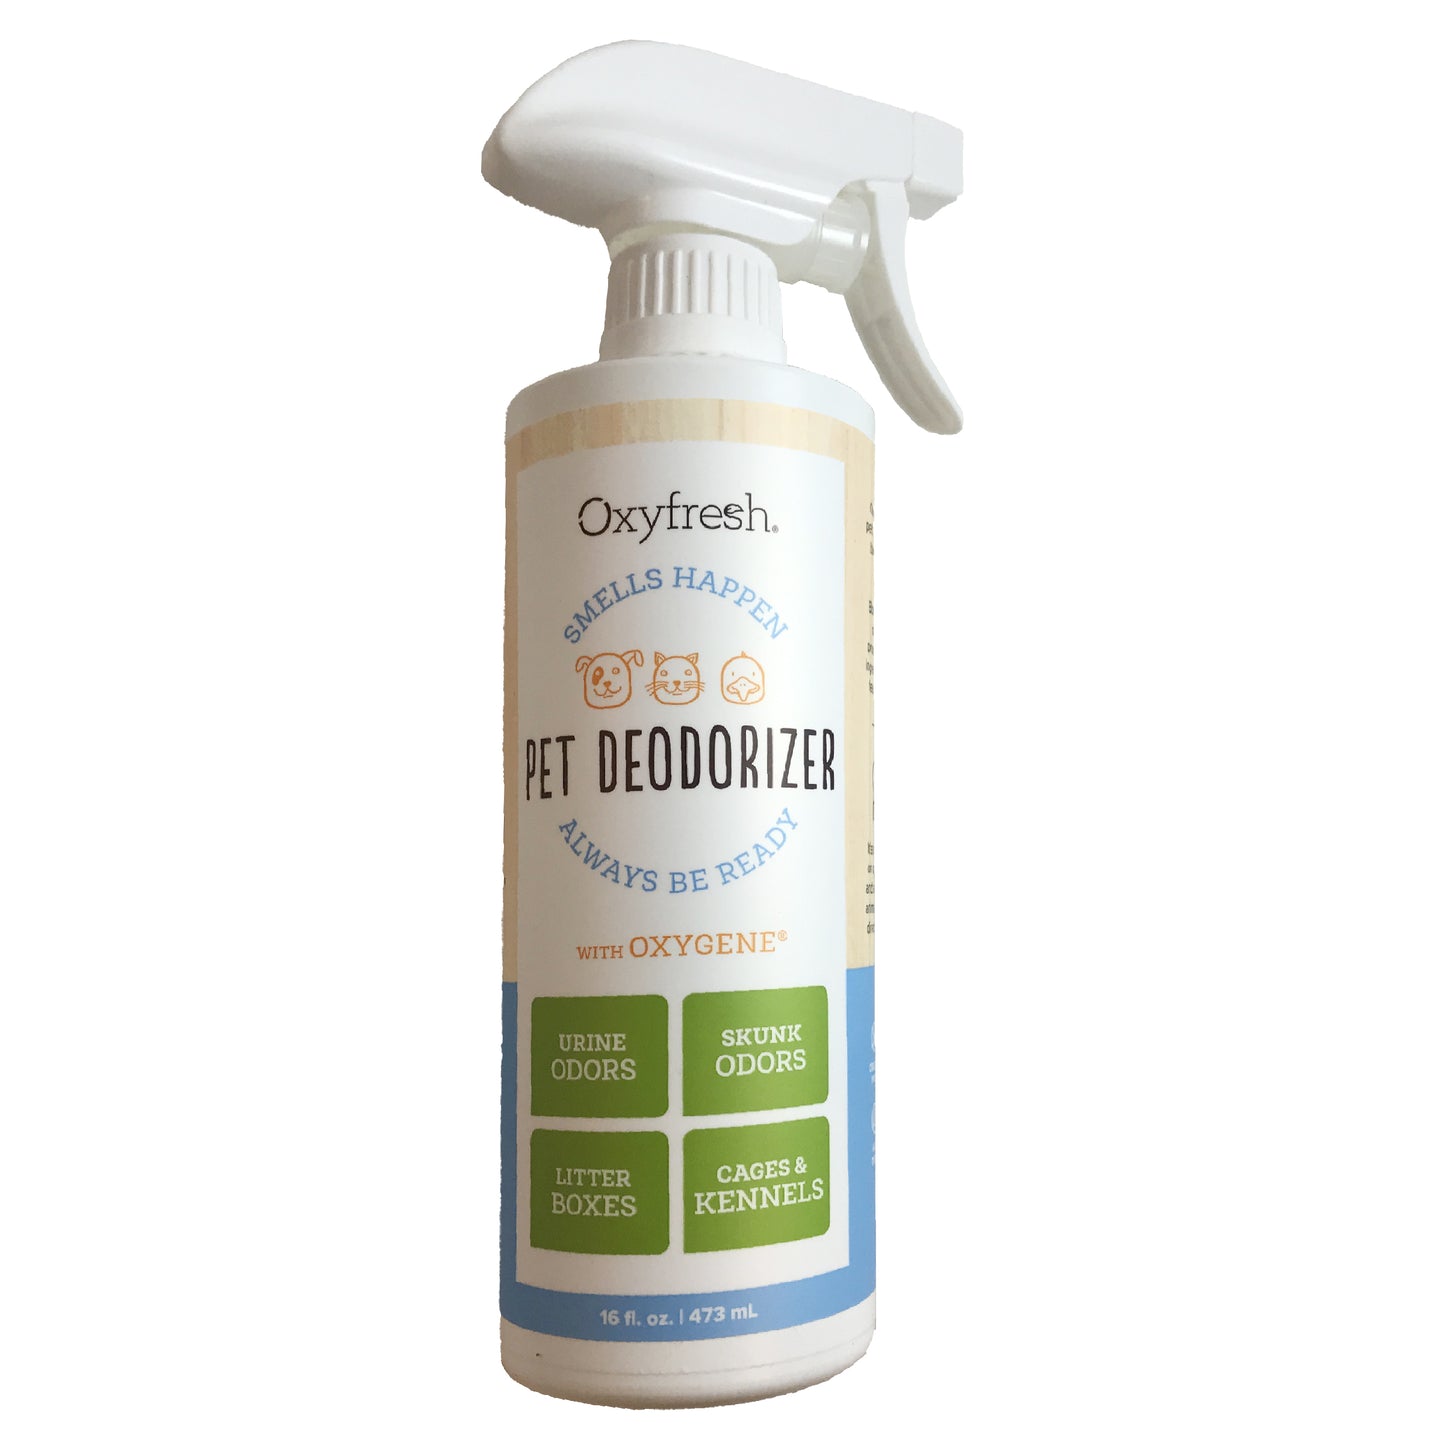 Pet Deodorizer by Oxyfresh, 16 oz.